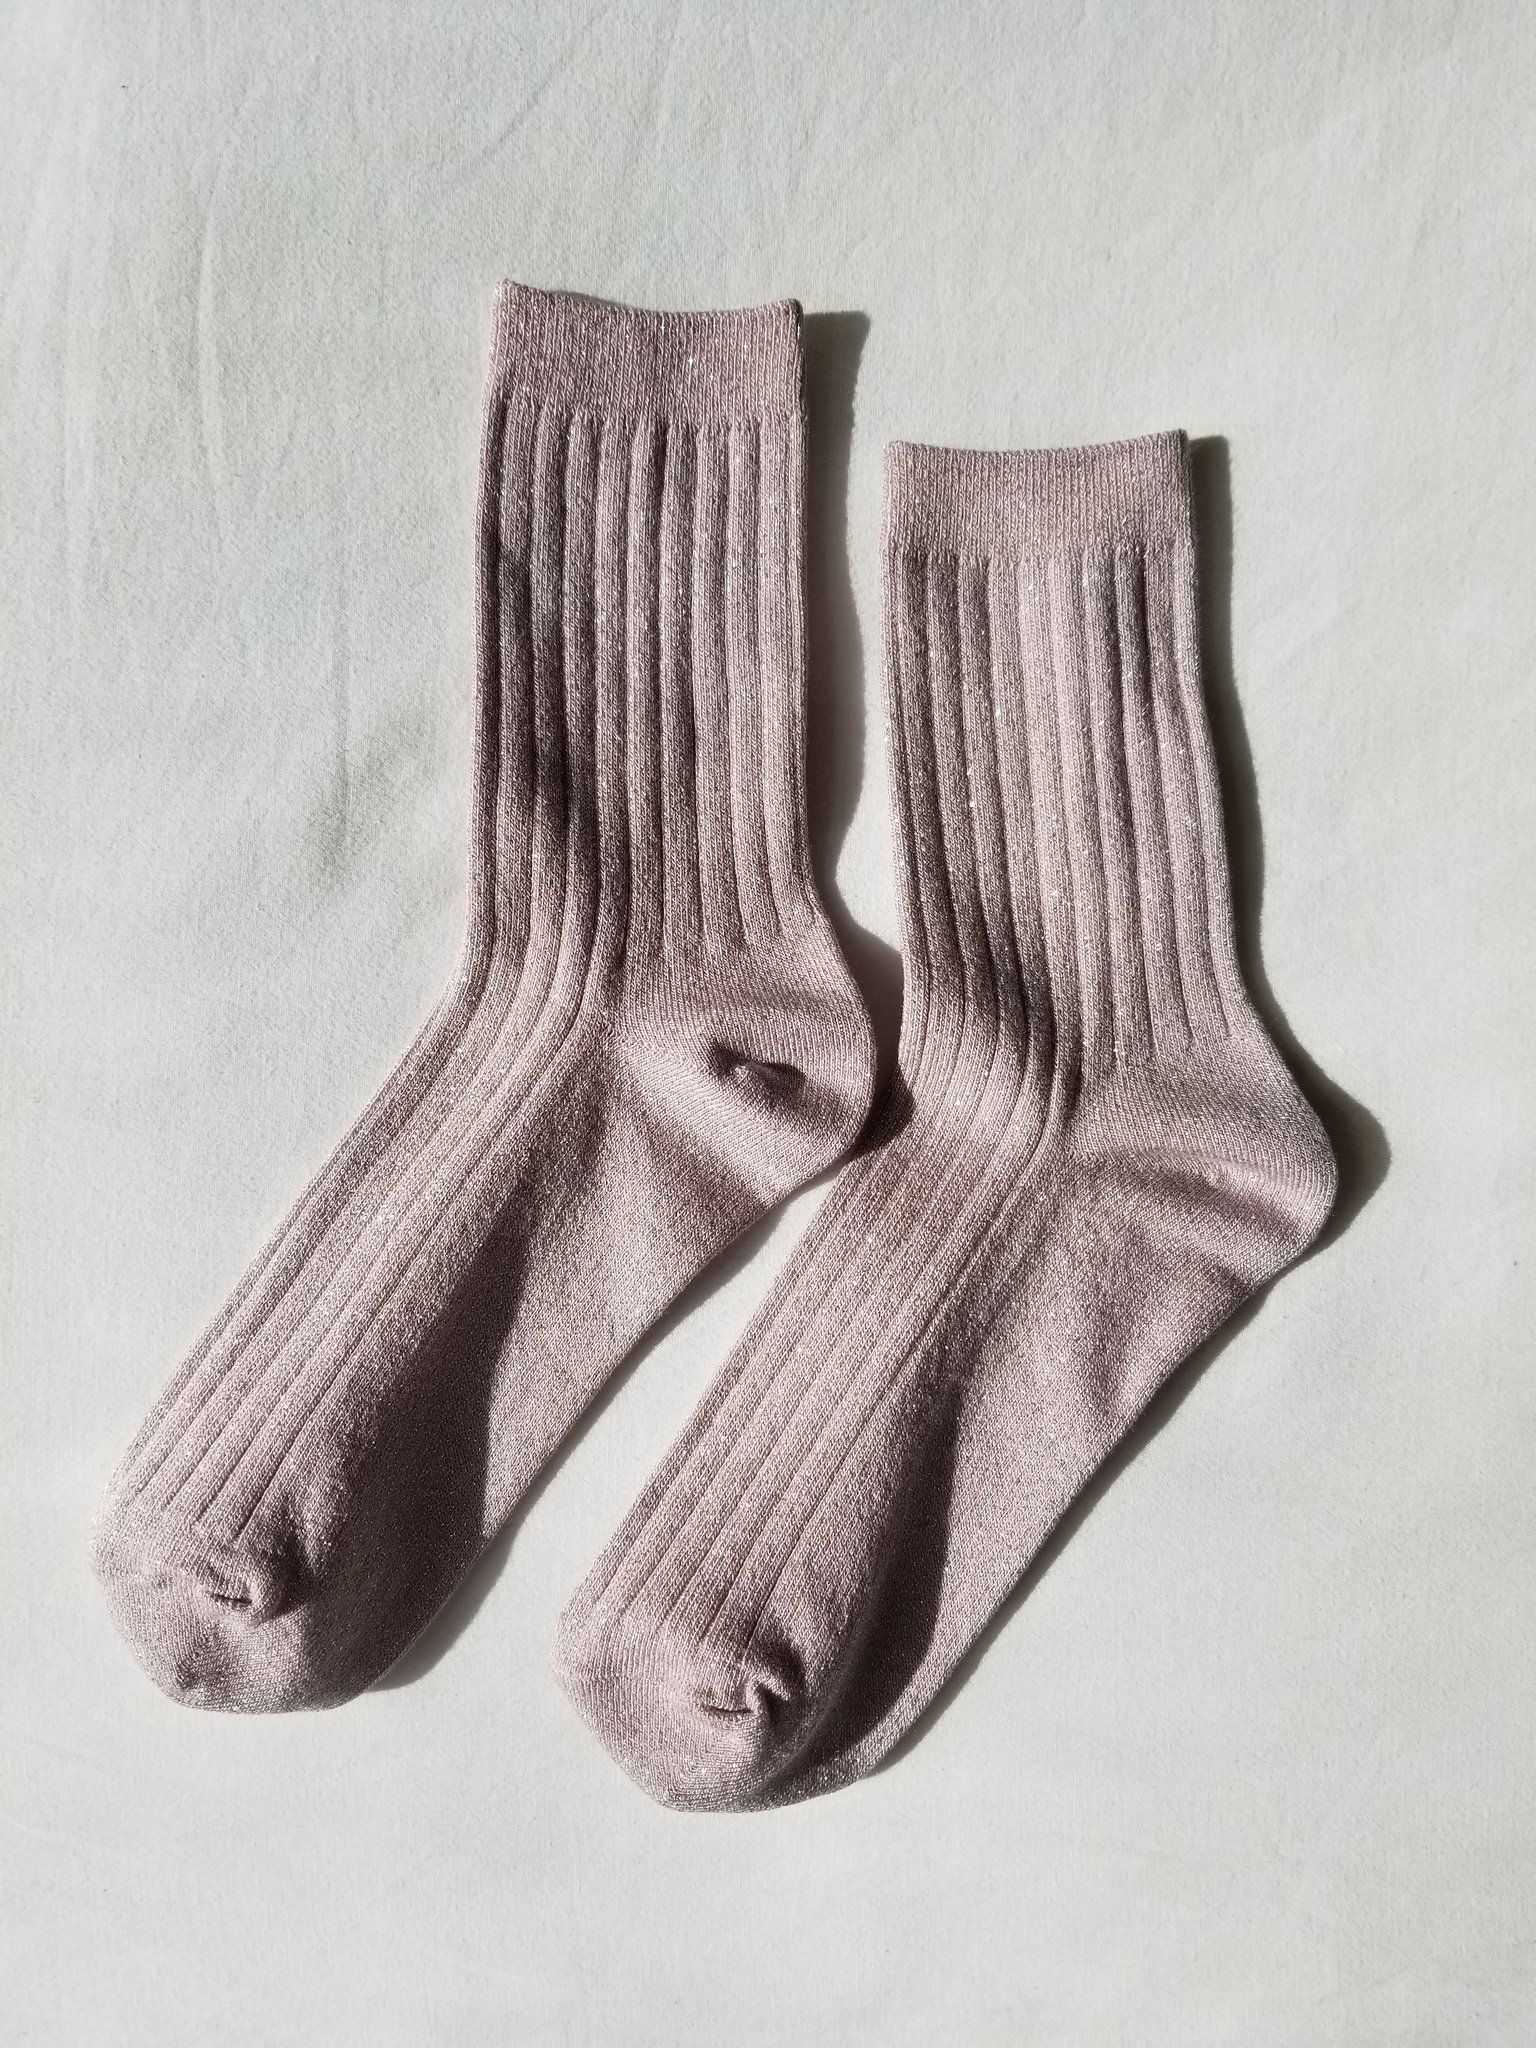 Product Image for Her Socks, Rose Glitter